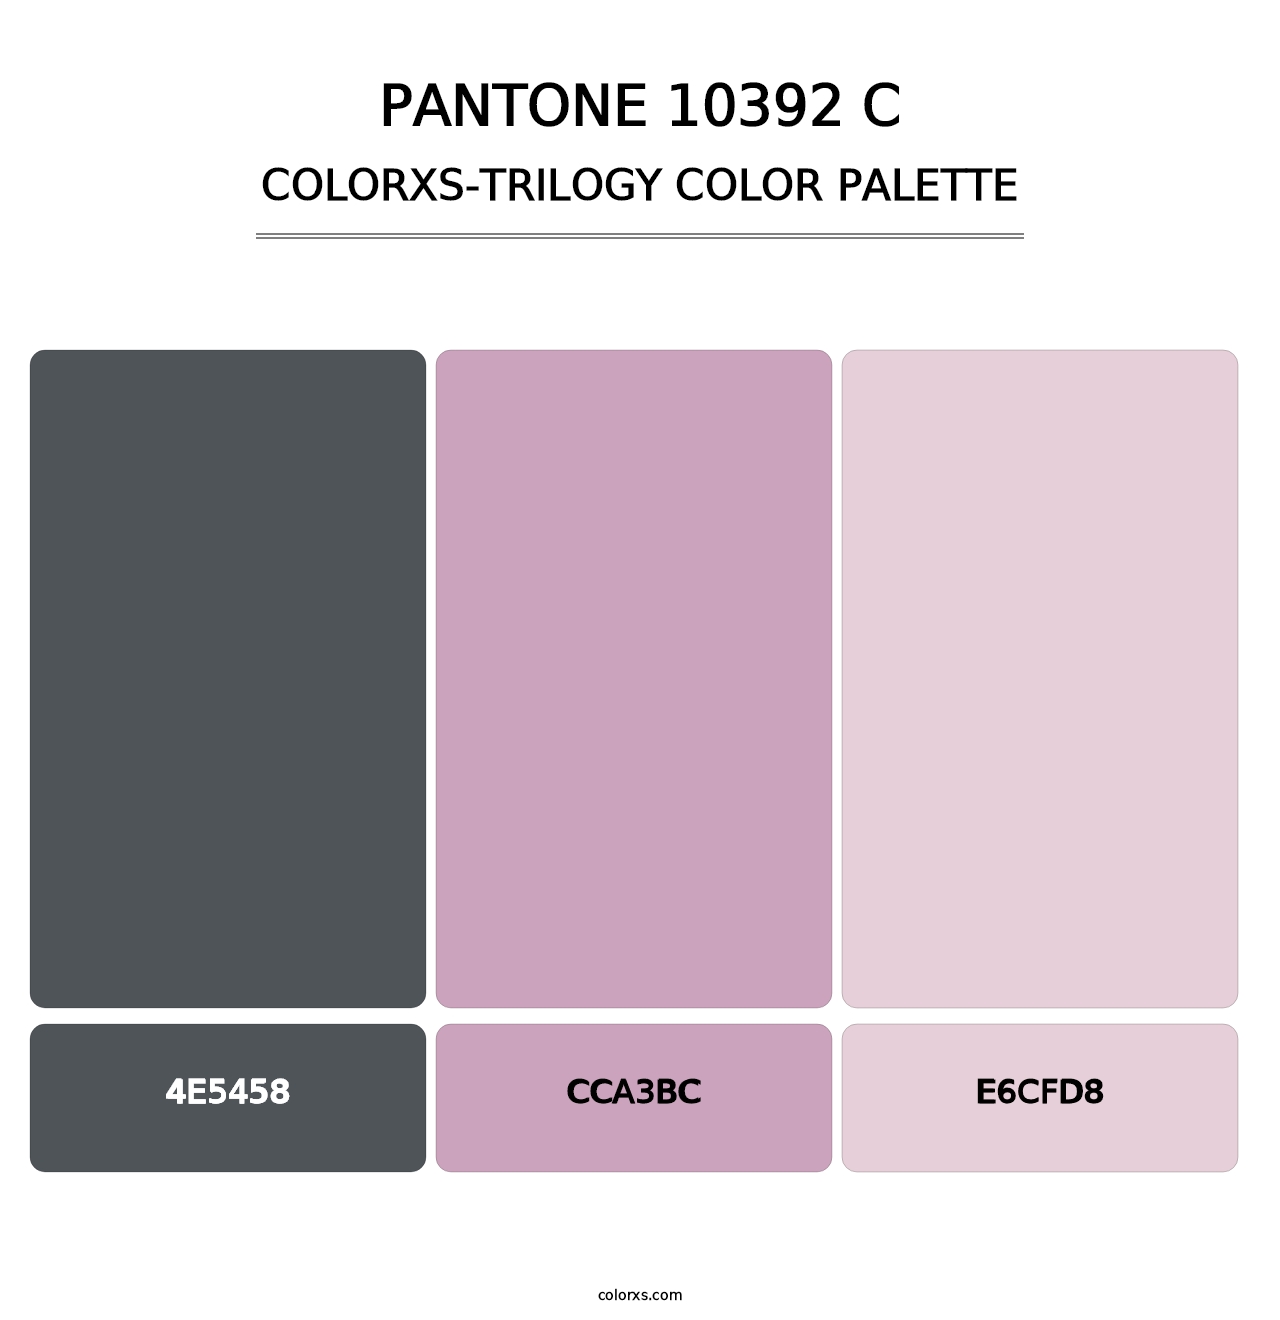 PANTONE 10392 C - Colorxs Trilogy Palette